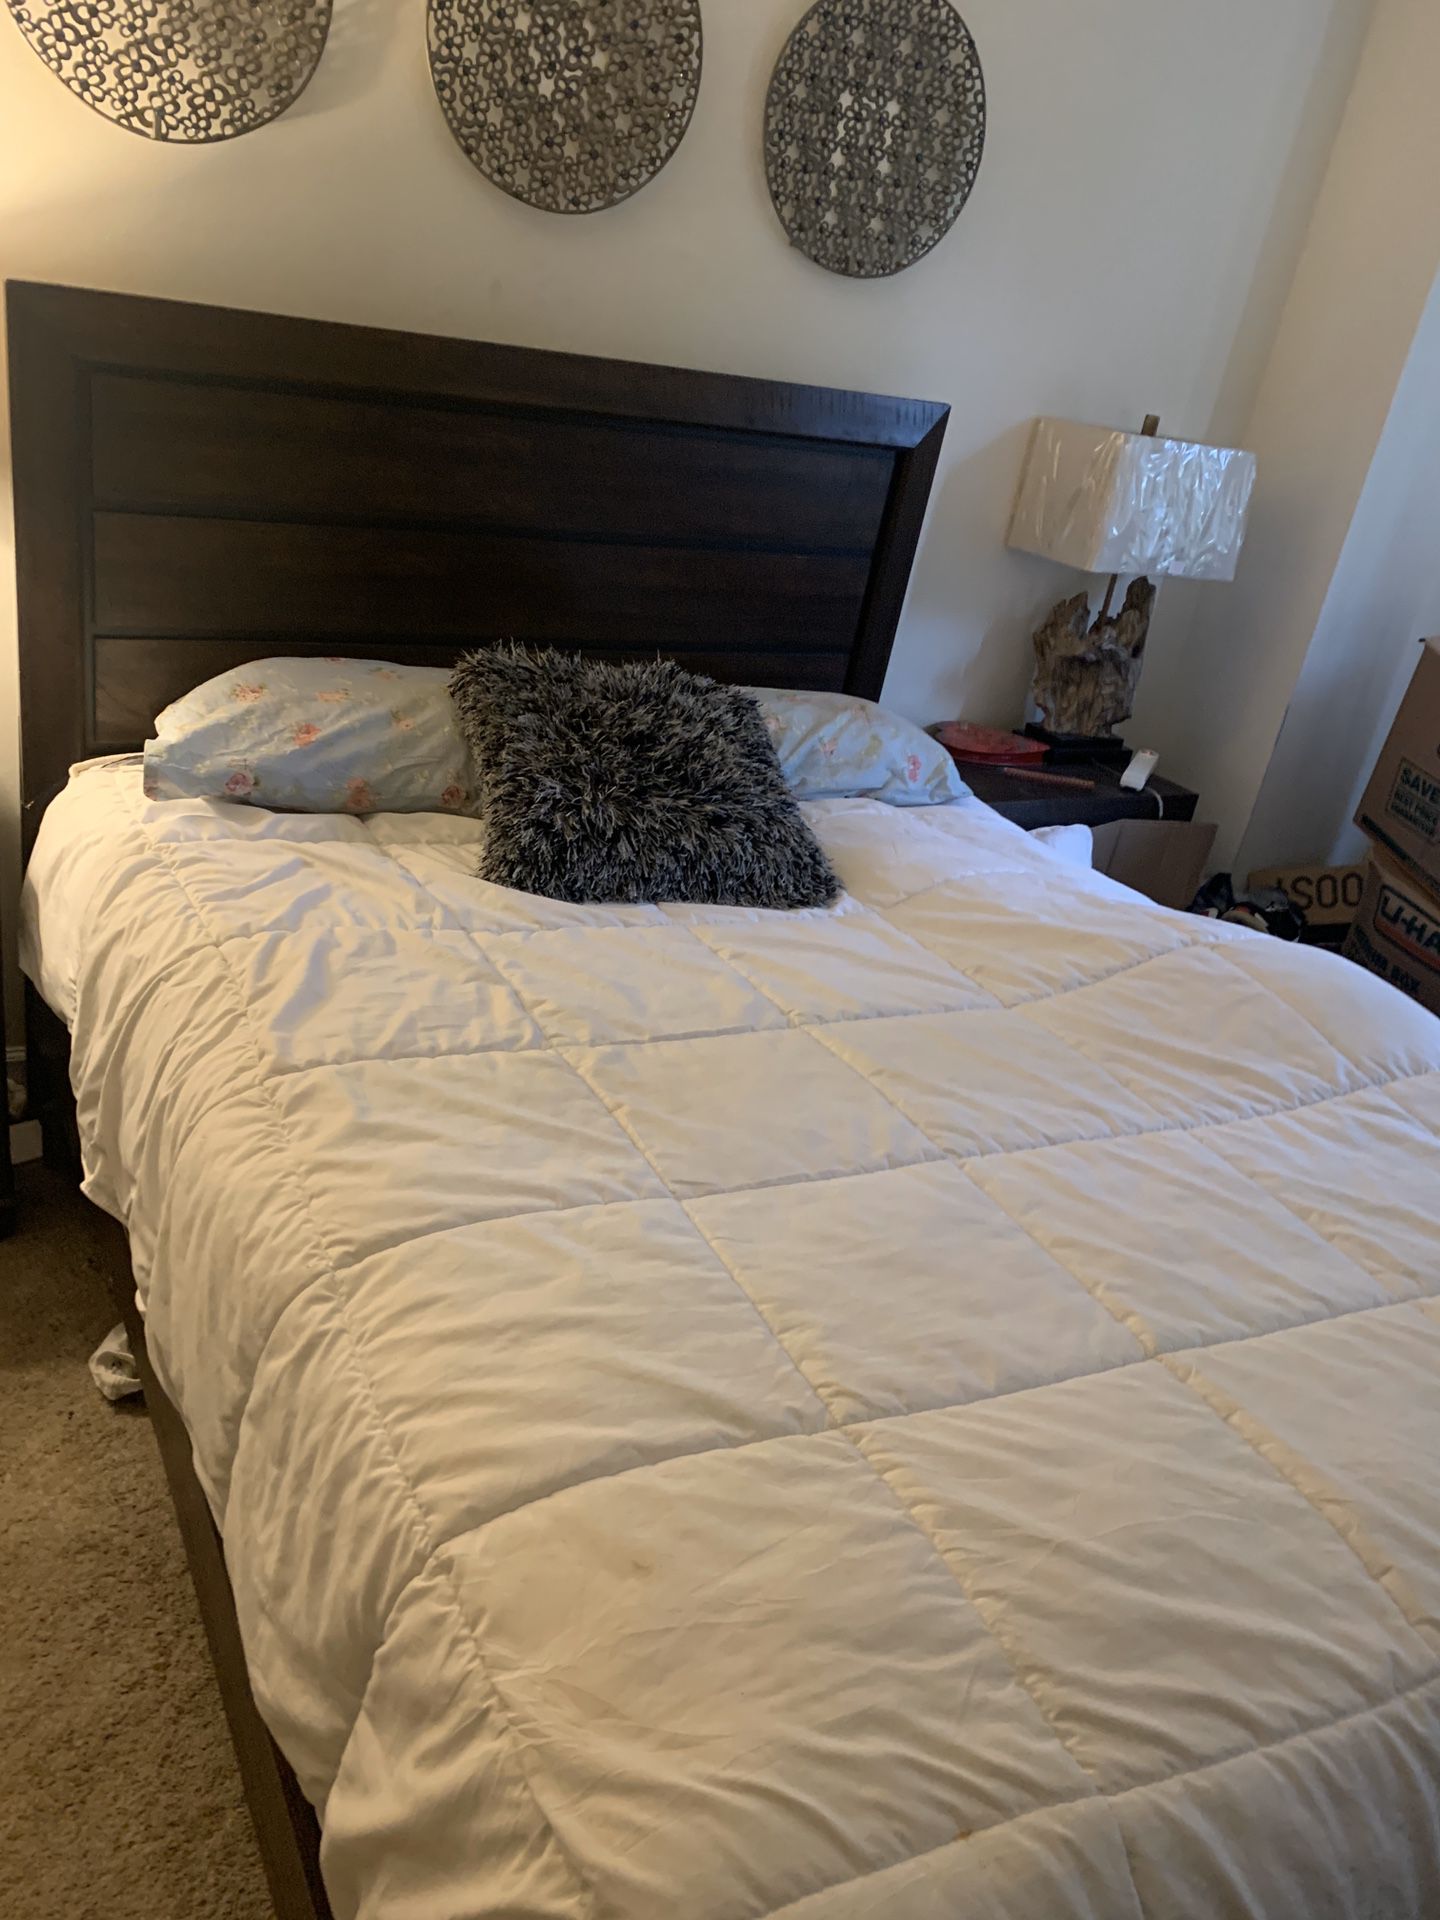 Bedrooms queen size set = 350